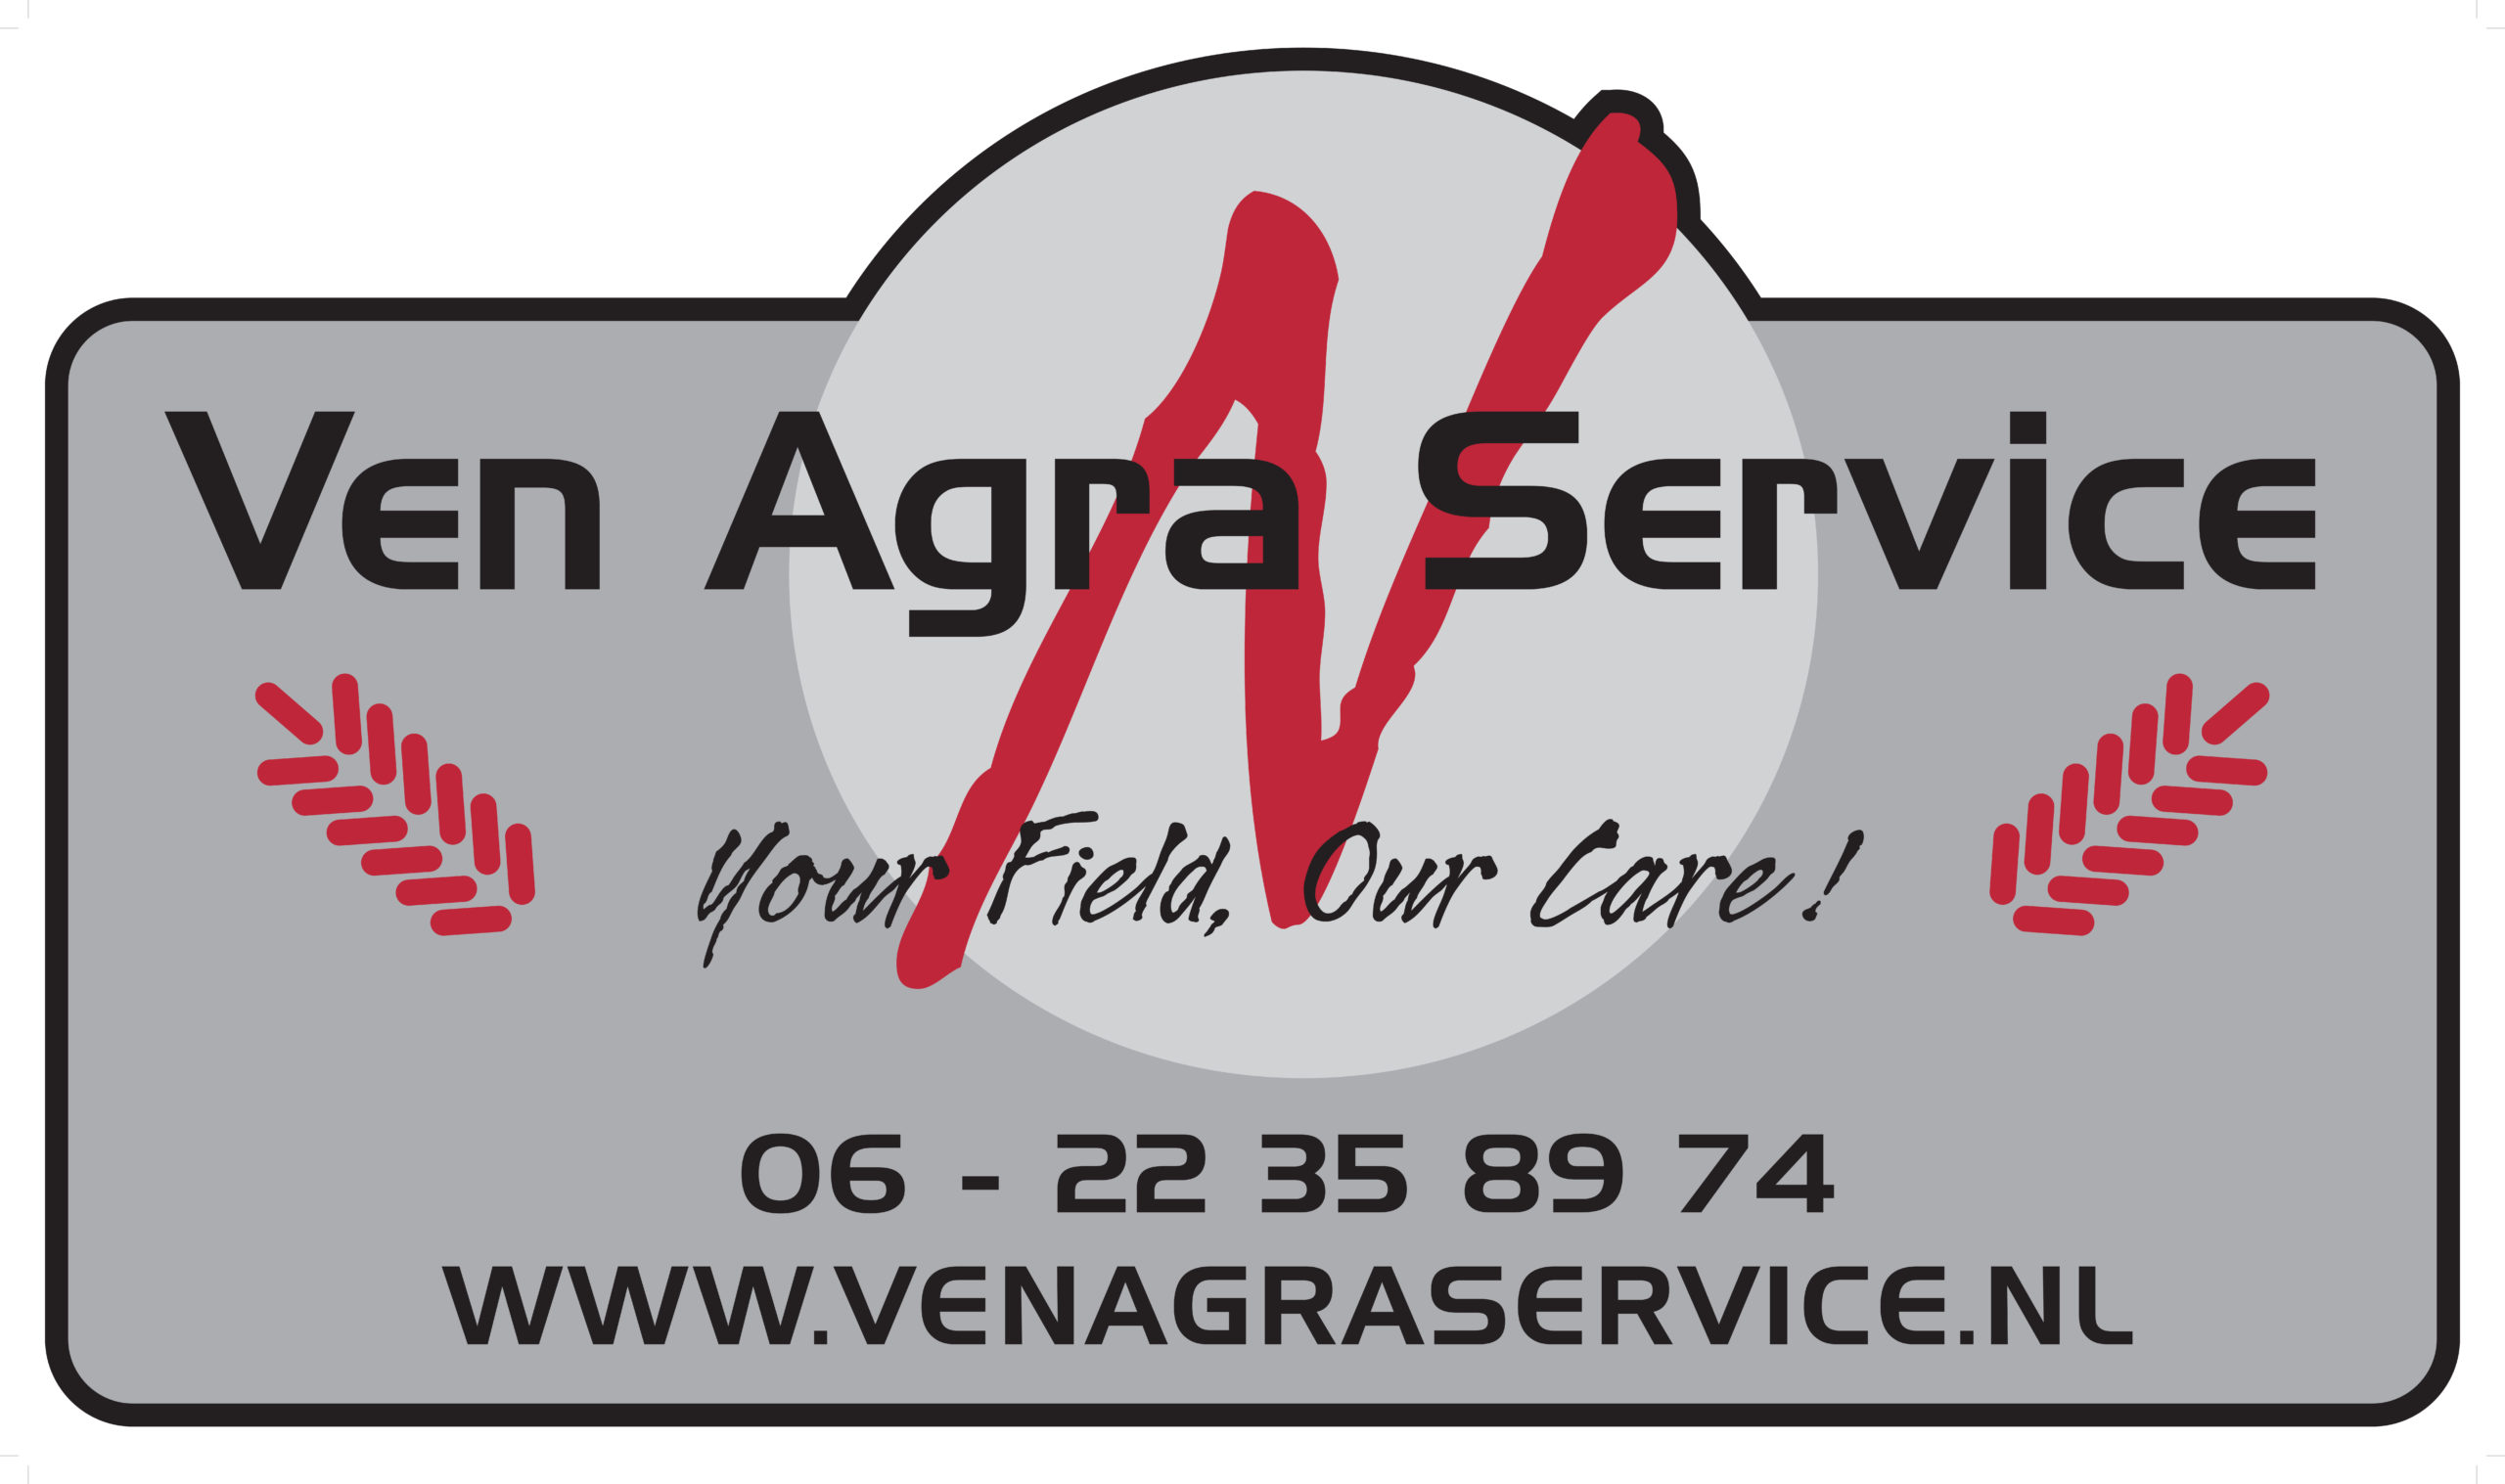 Ven Agra Service